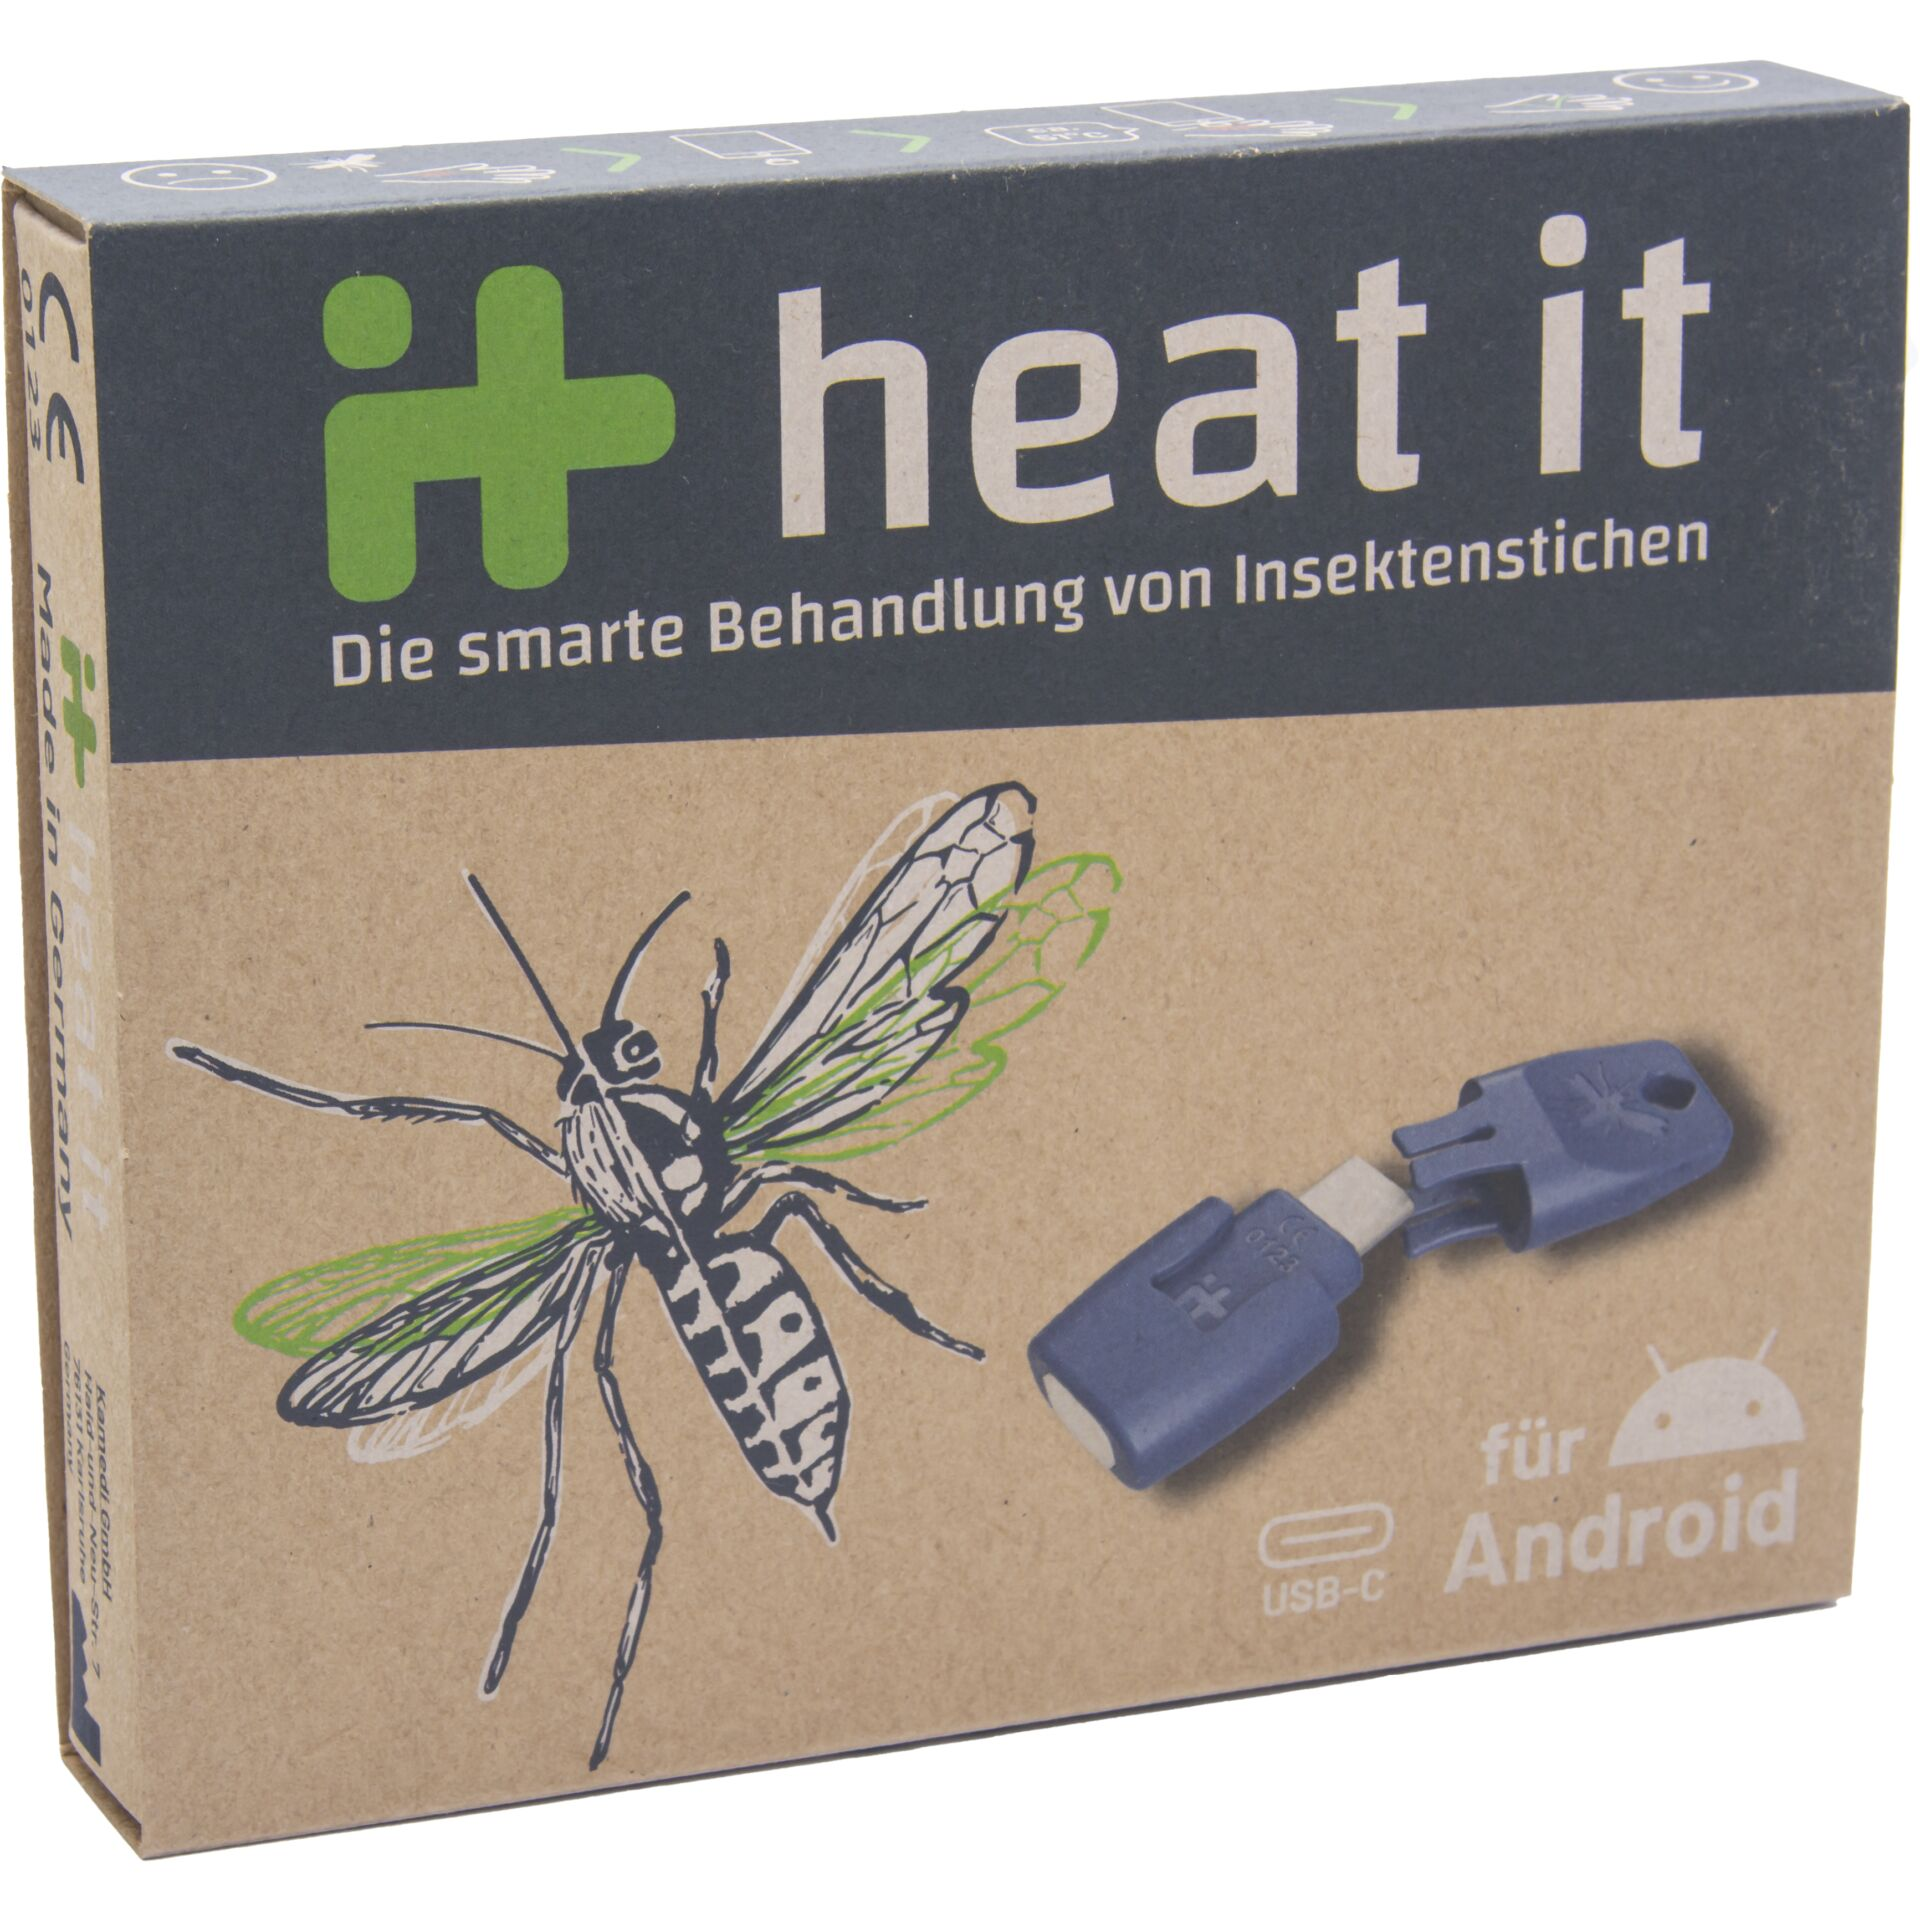 HEATIT für Stichheiler von Elektronischer Insektenstichen Smarte Android Behandlung 